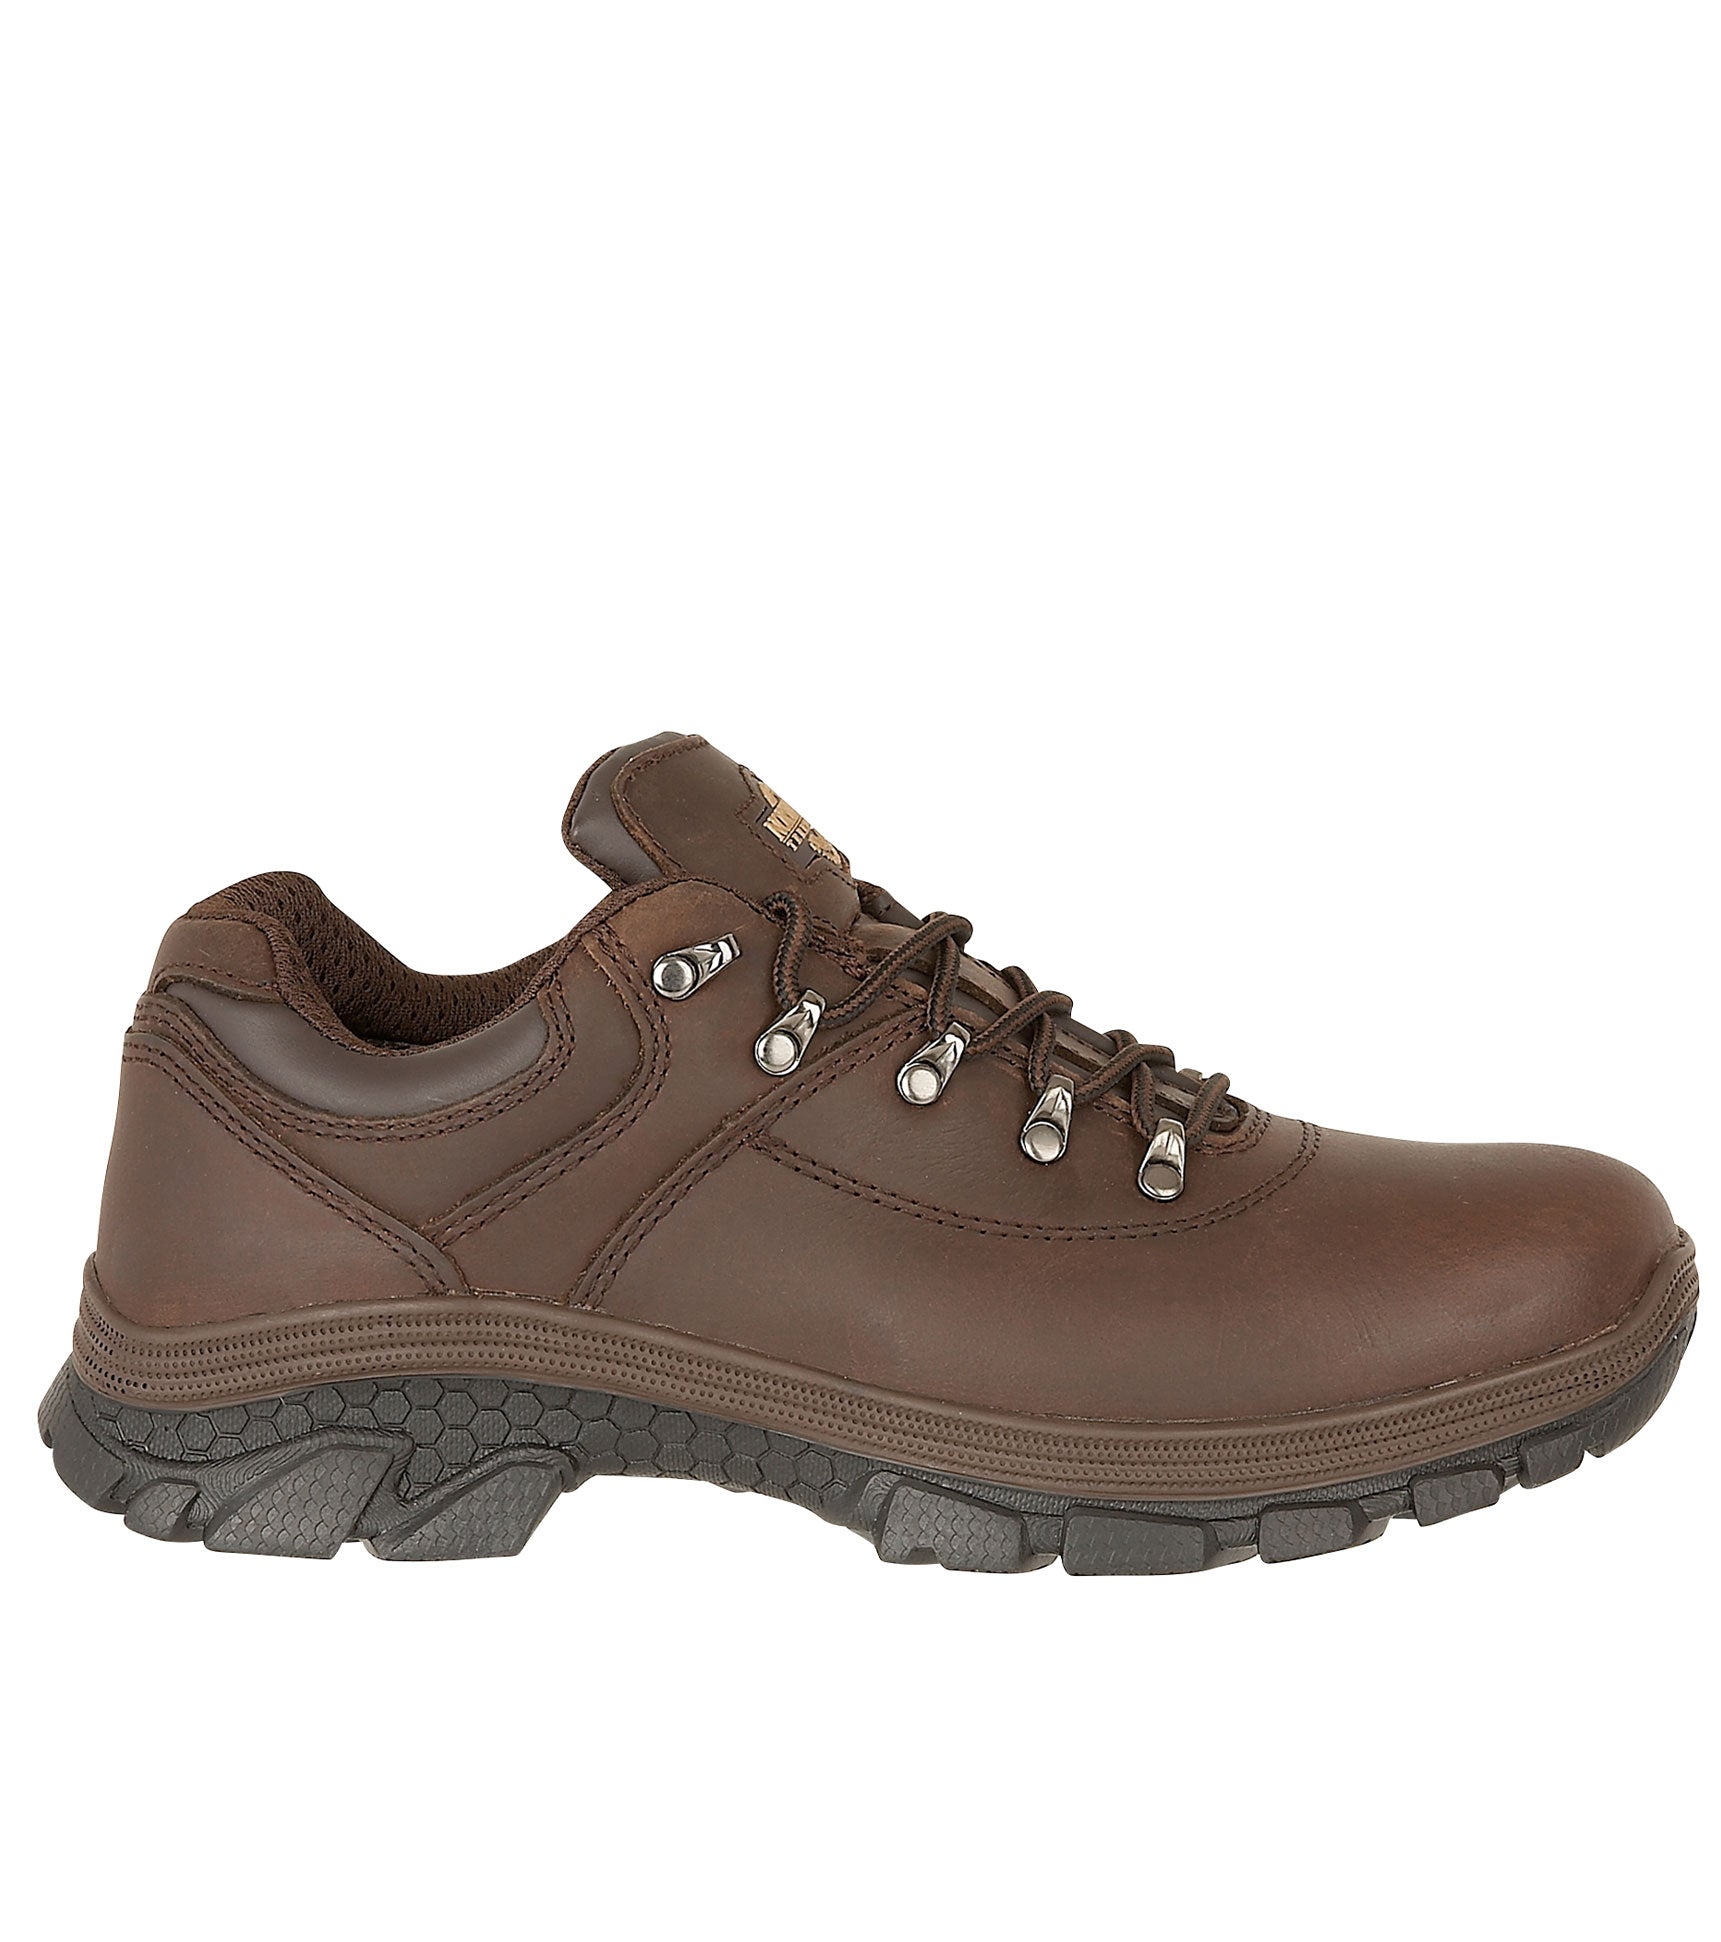 Men's Waterproof Leather Walking Shoes | AYLMER | Northwest Territory